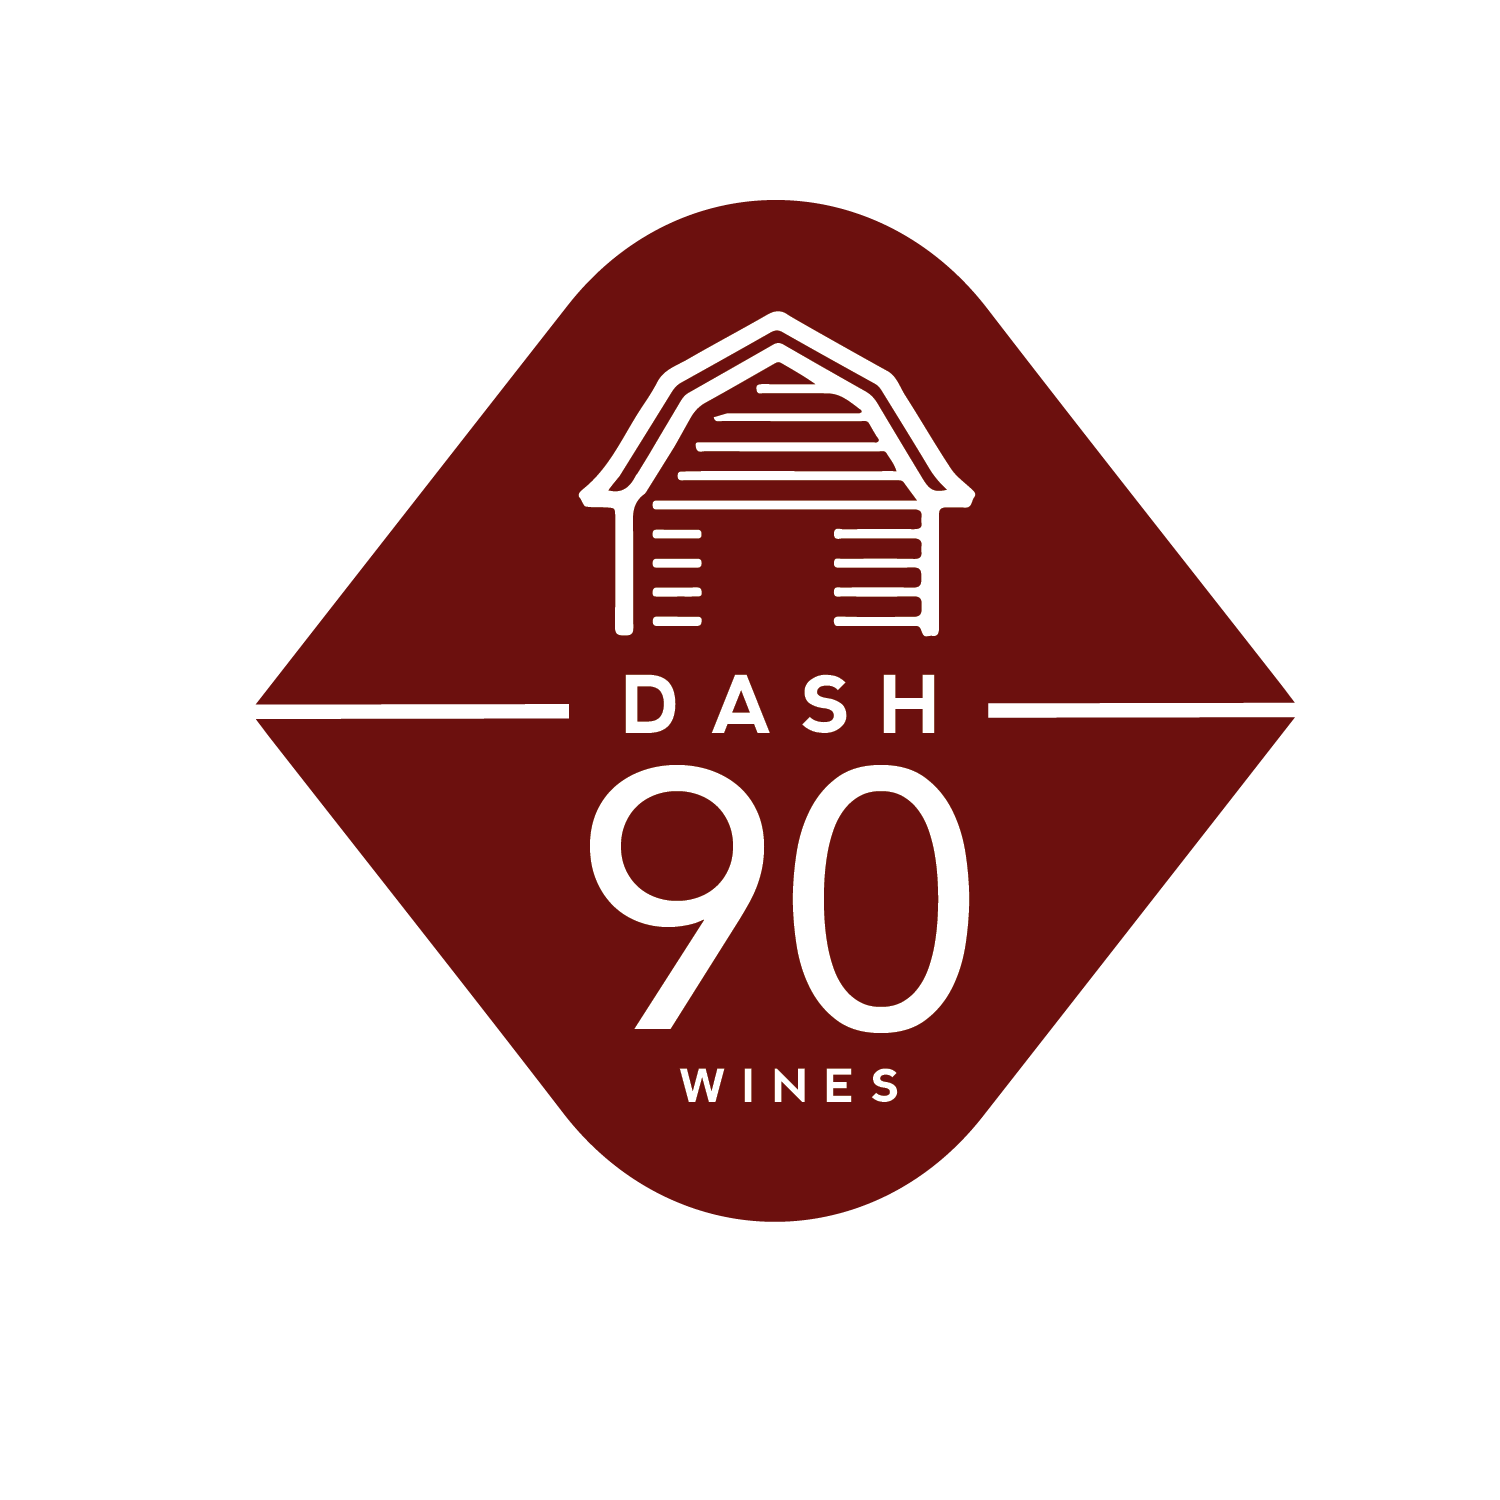 Dash 90 Wines